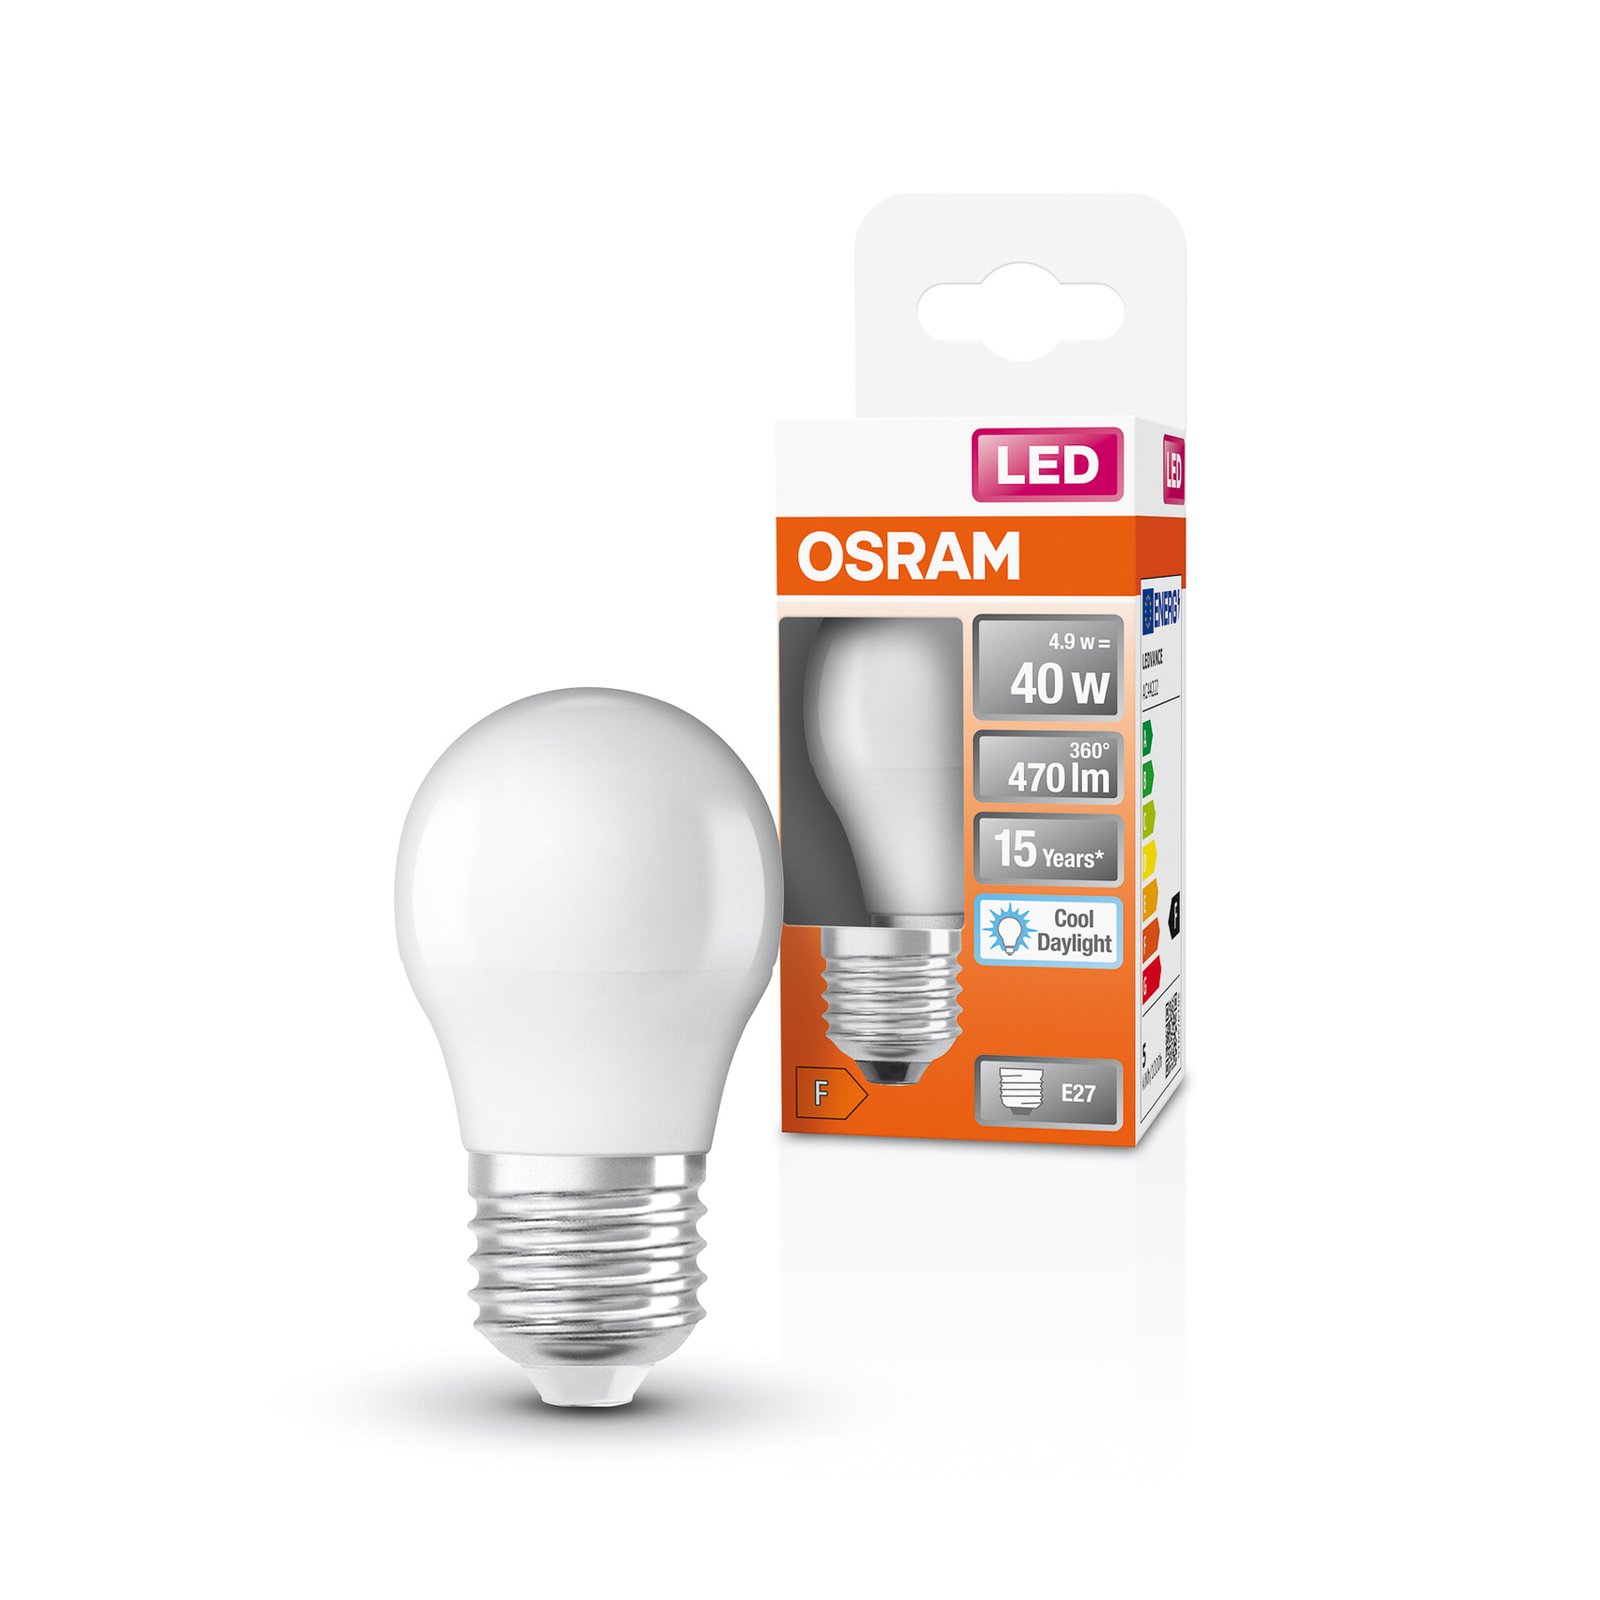 OSRAM Star LED-Lampe E27 4,9W 470lm 6.500K matt